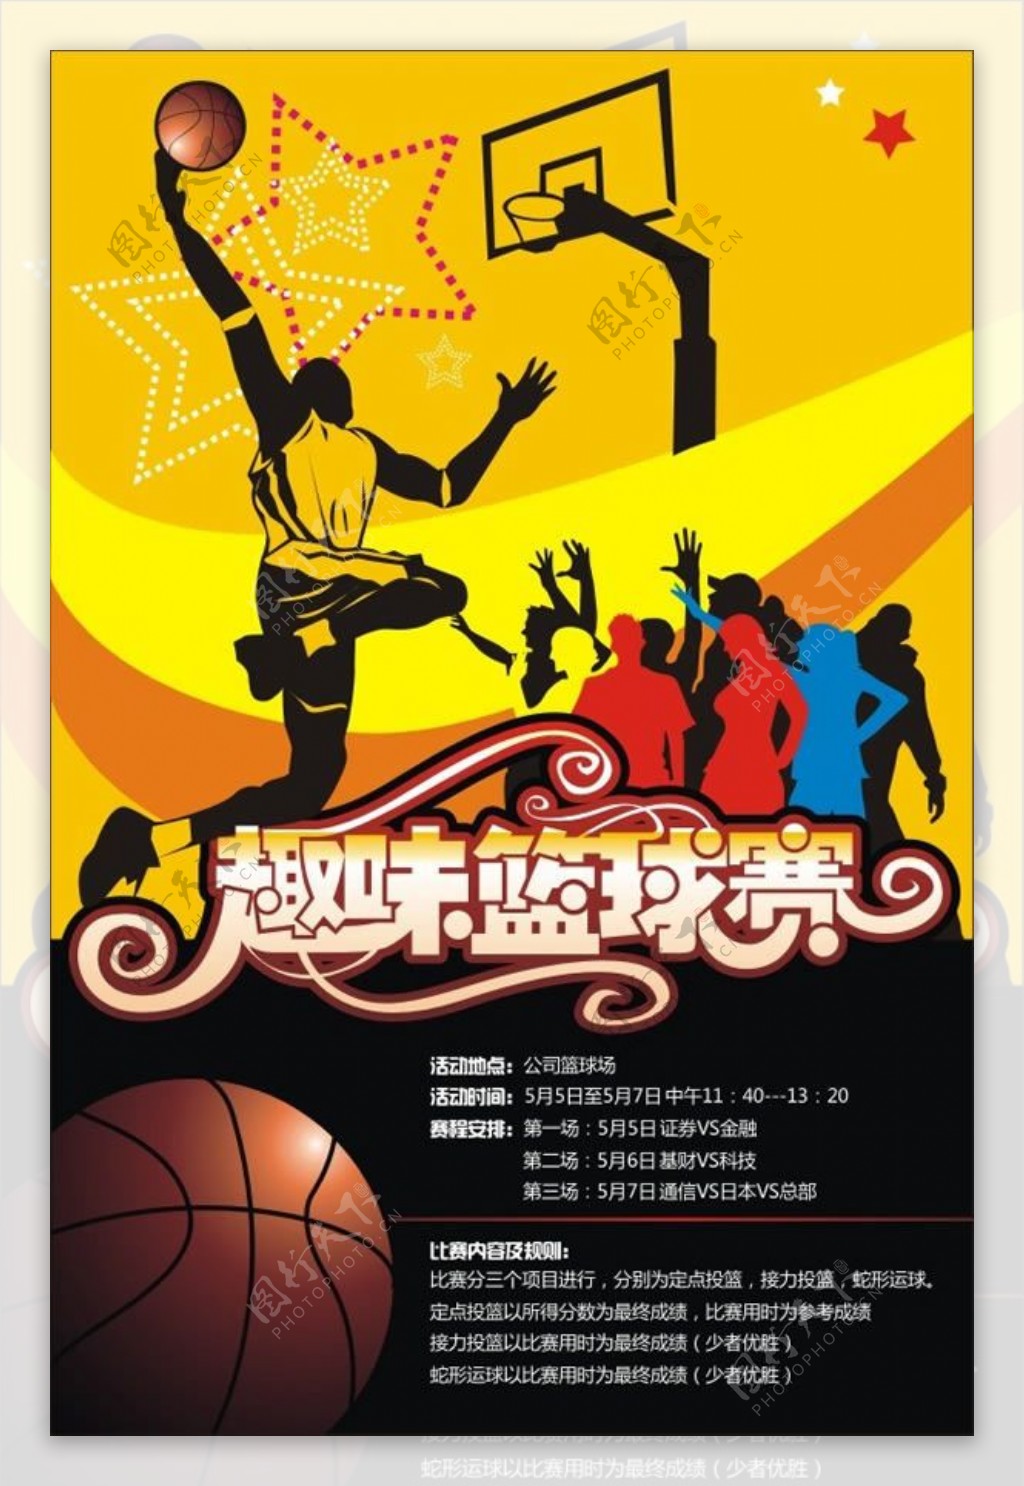 趣味篮球赛活动宣传海报cdr素材